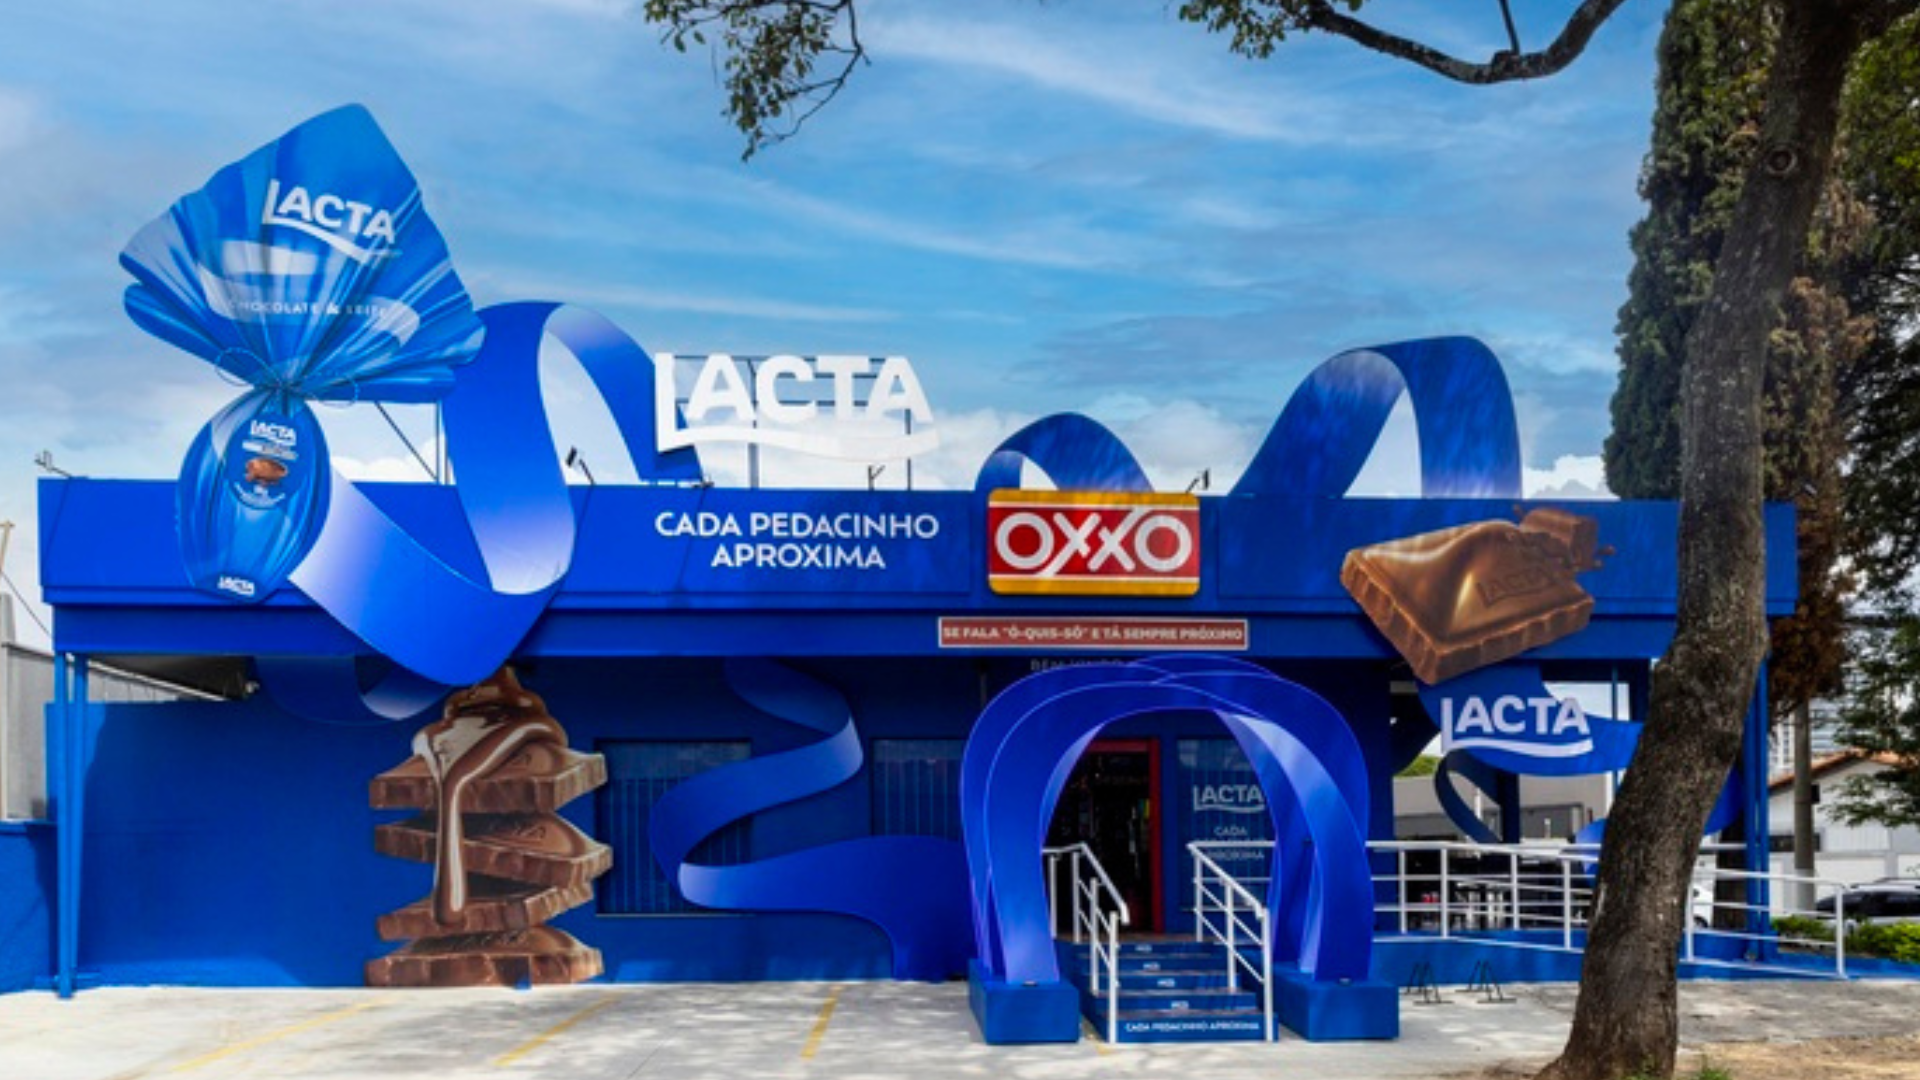 Lojas OXXO recebem novo conceito visual em parceria com KitKat e Lacta na Páscoa